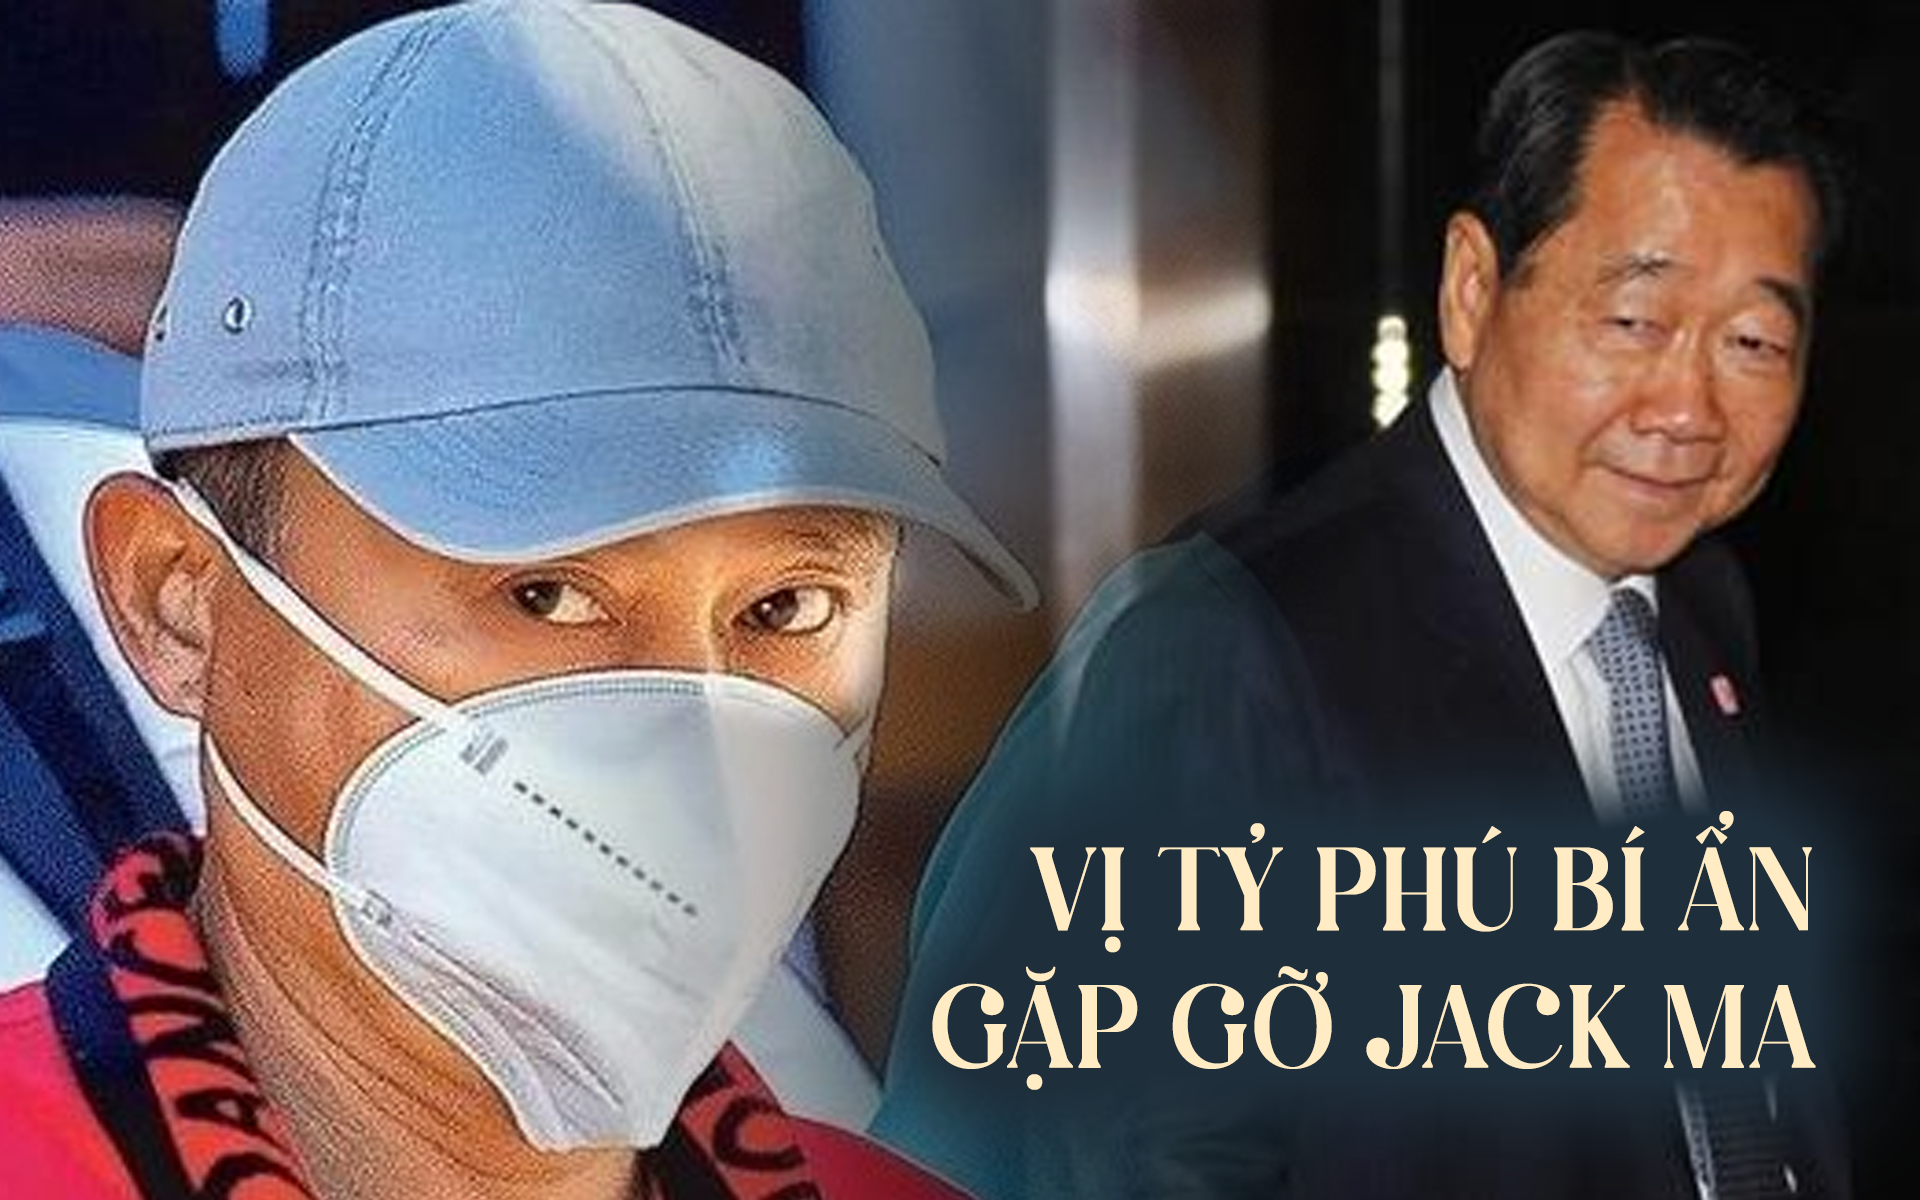 Vị tỷ phú Đông Nam Á quyền lực vừa mới gặp gỡ Jack Ma tại Hong Kong (Trung Quốc): Hóa ra là cái tên quen thuộc tại Việt Nam - Ảnh 1.